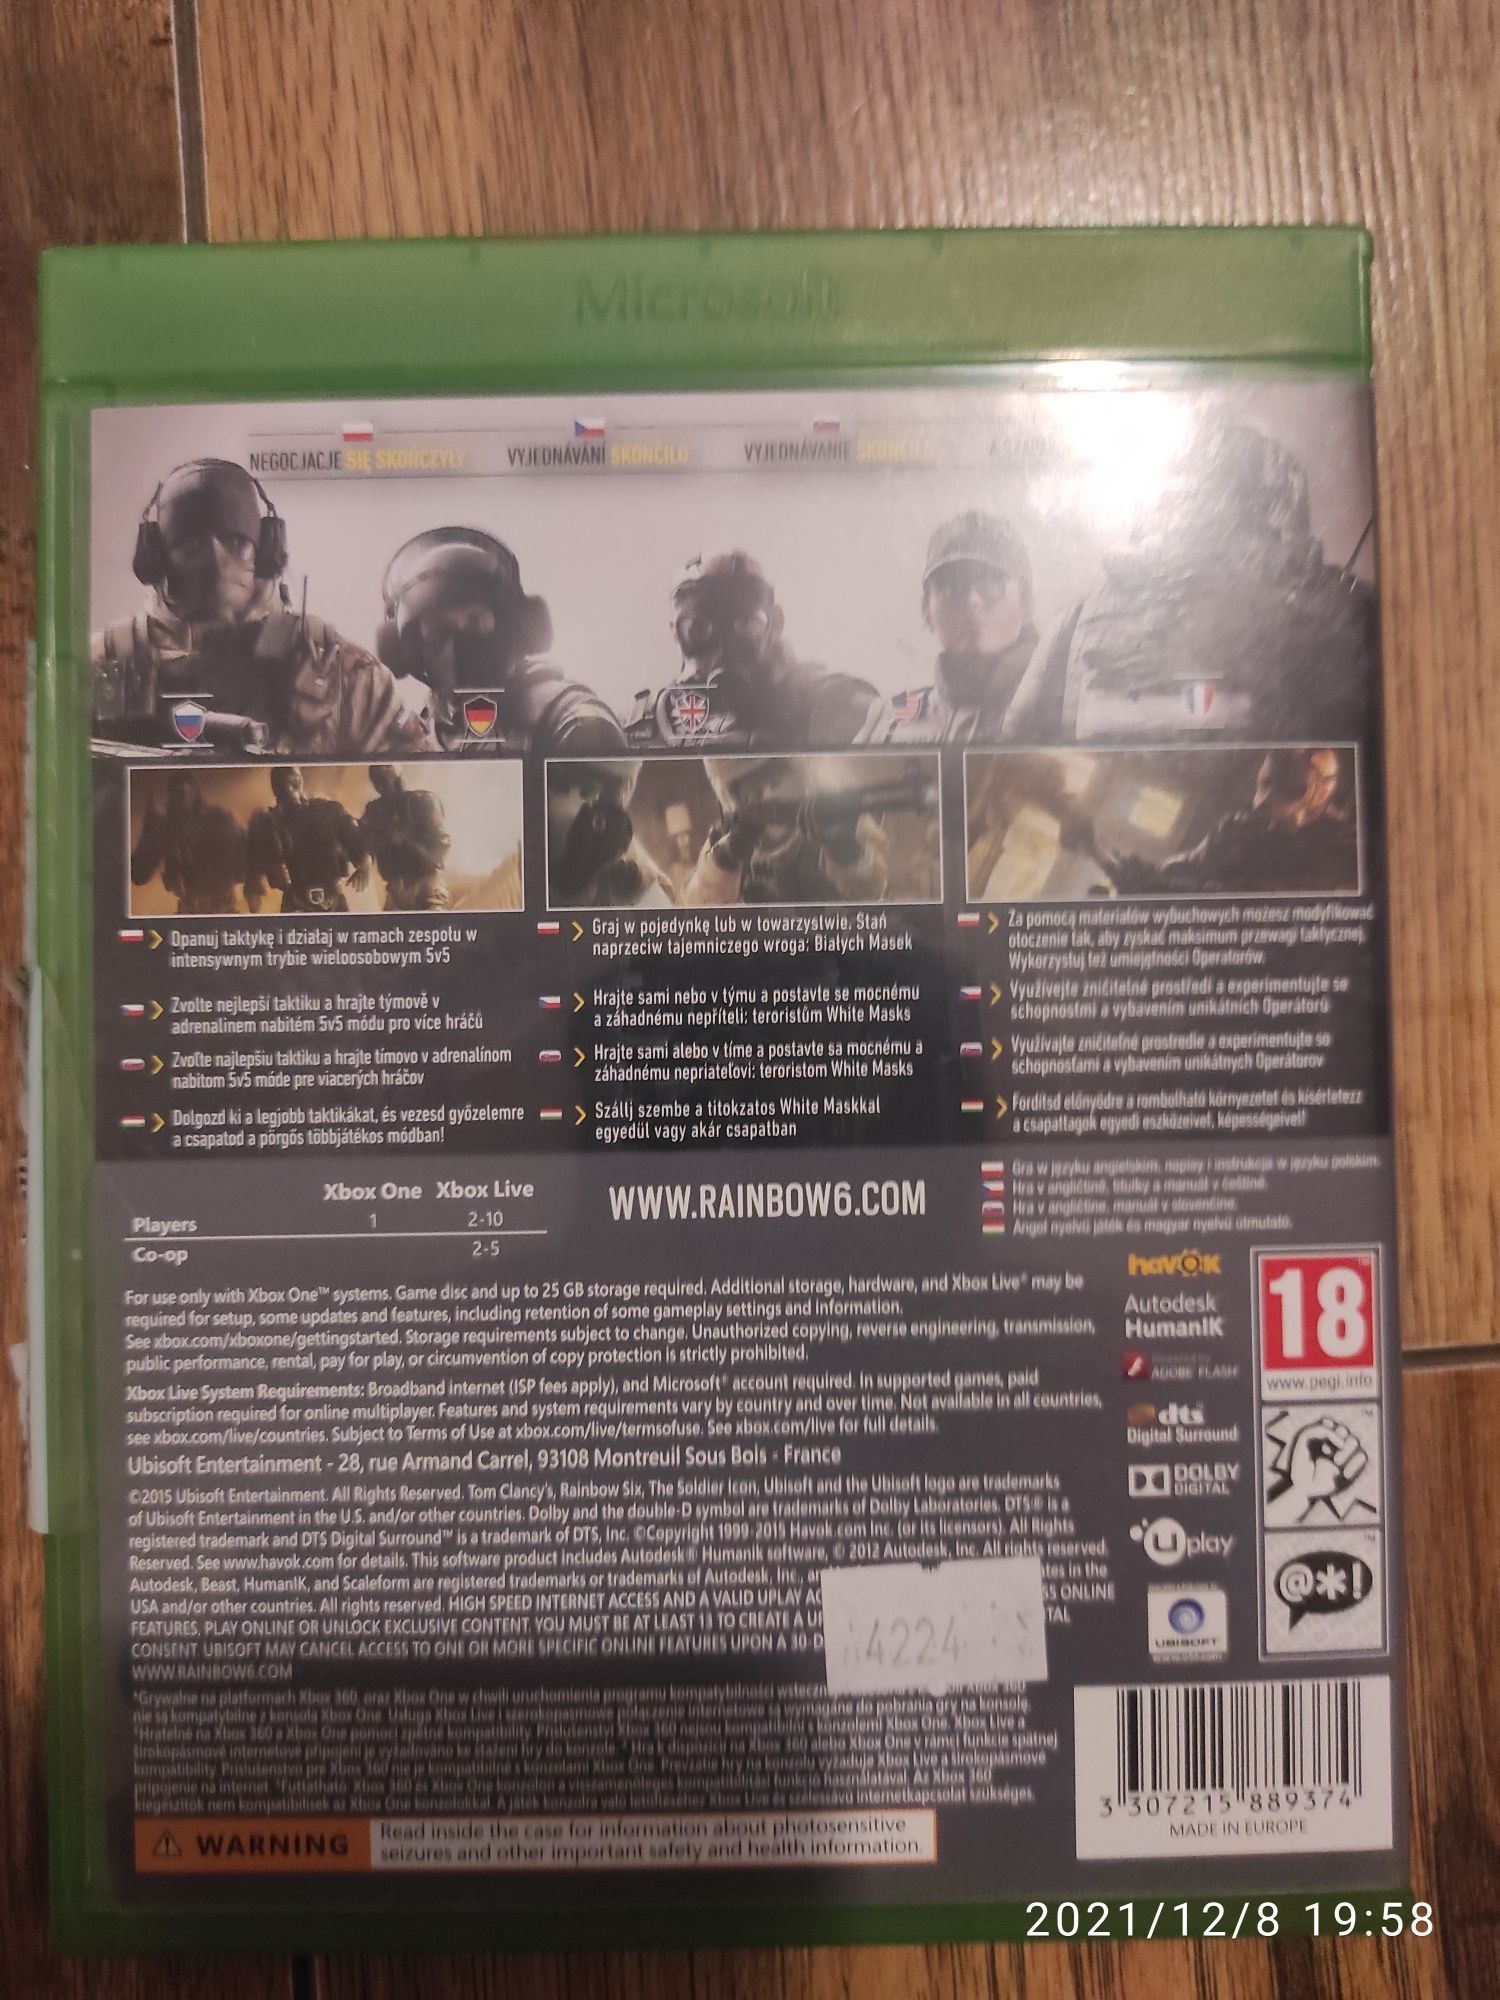 Tom Clancy's Rainbow Six Siege - Xbox One